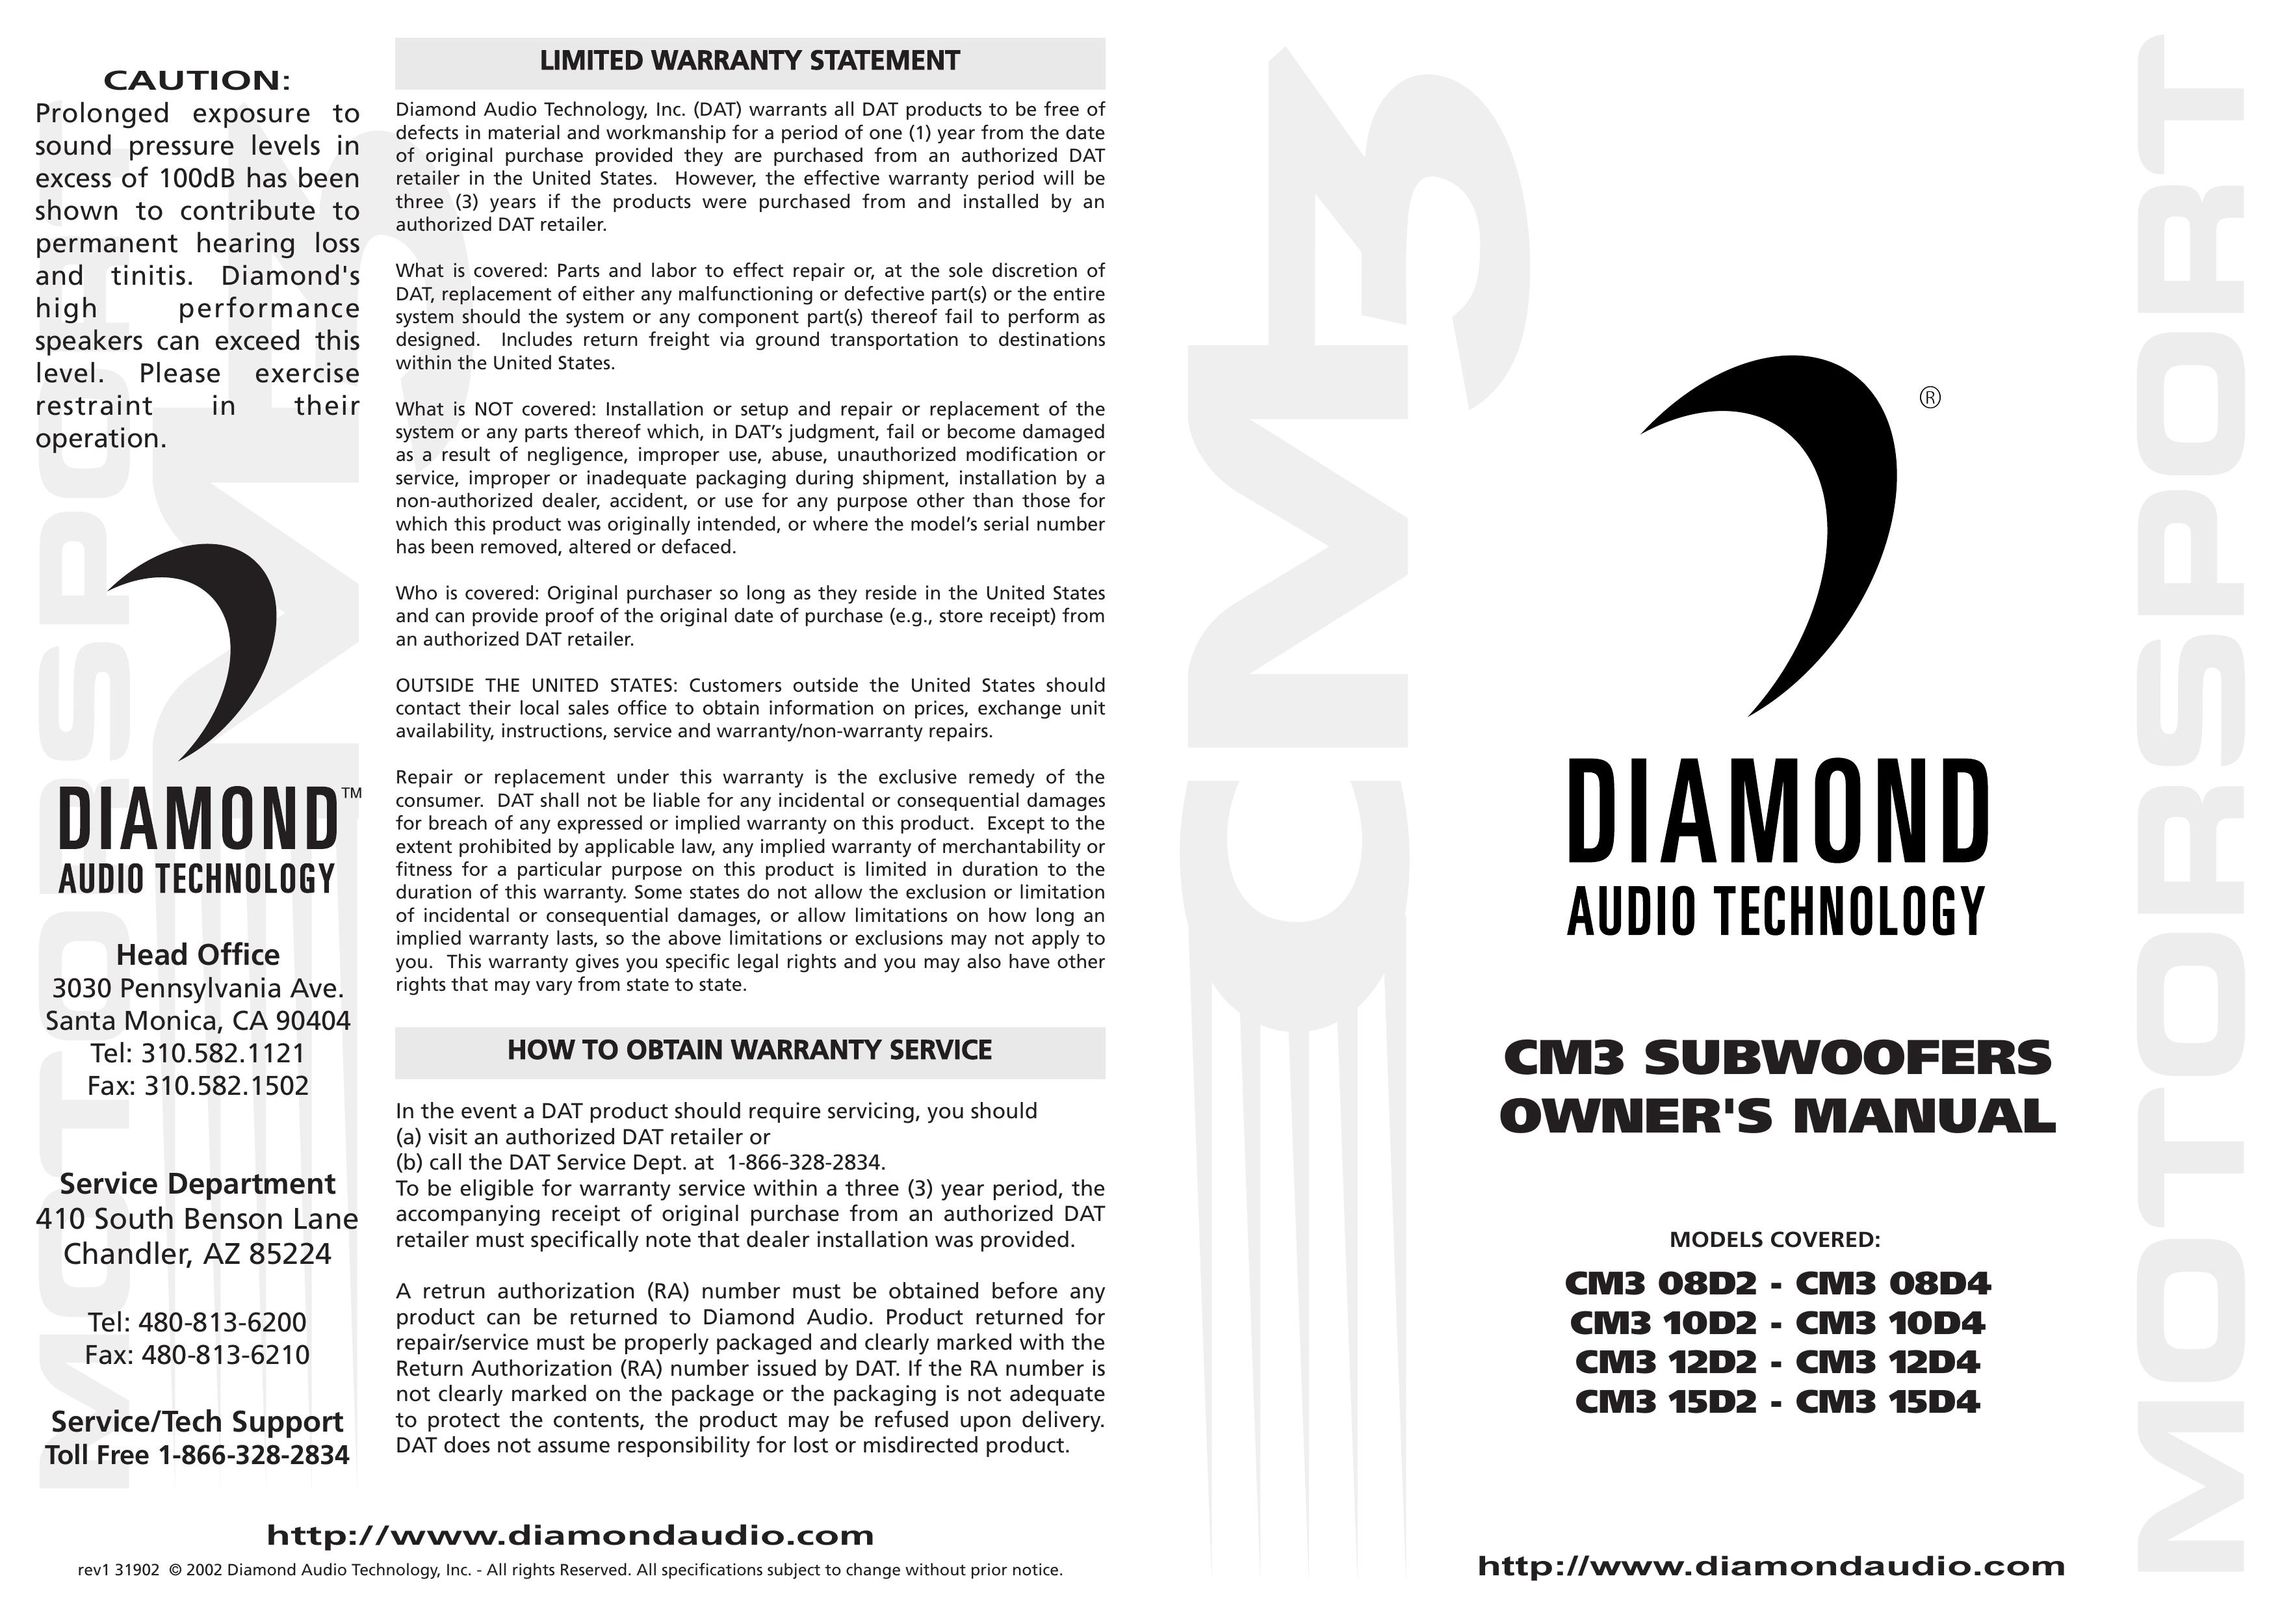 Diamond Audio Technology CM3 08D4 Speaker User Manual